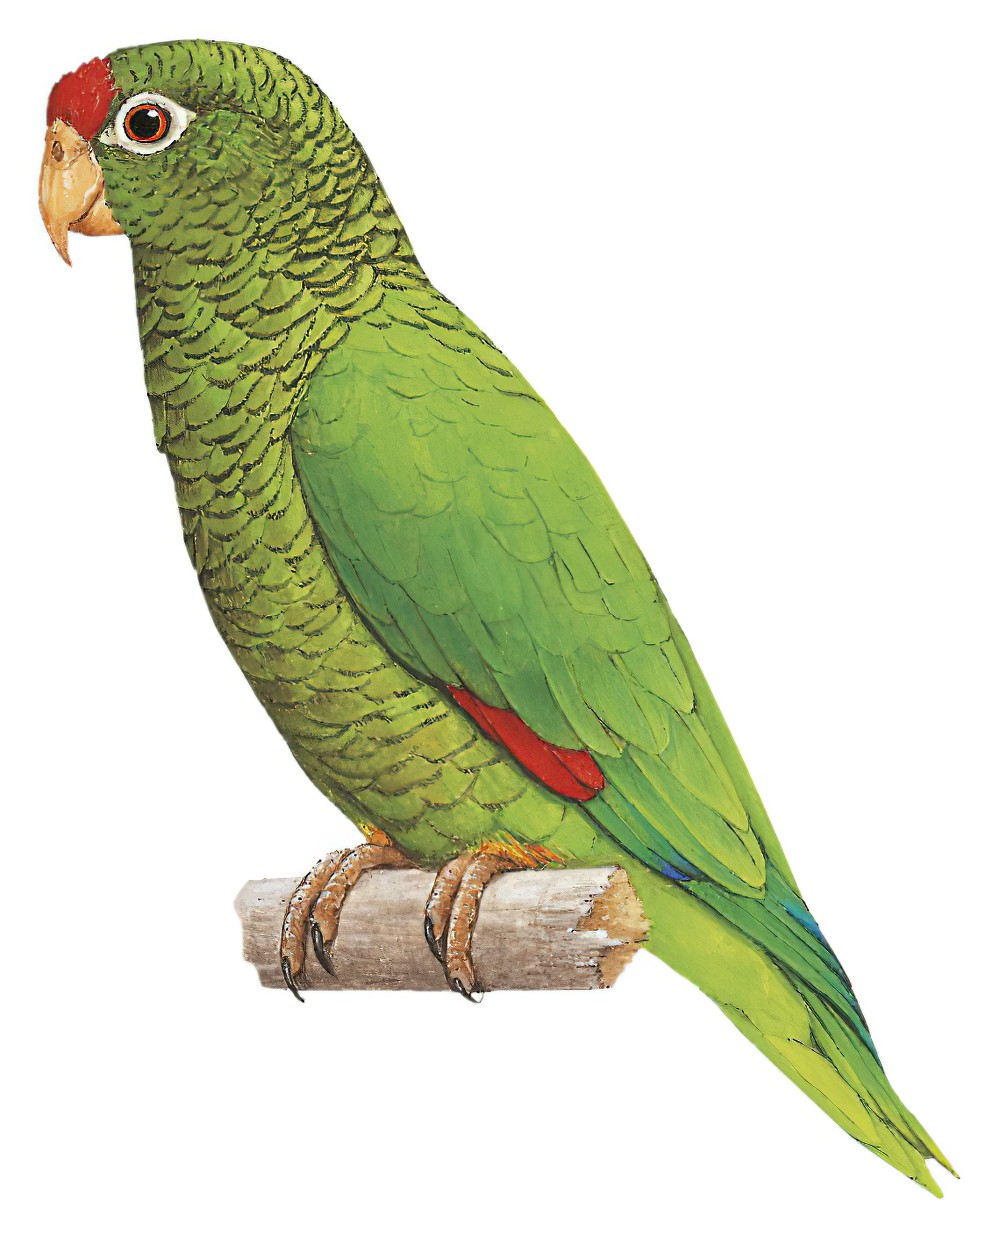 Tucuman Parrot / Amazona tucumana